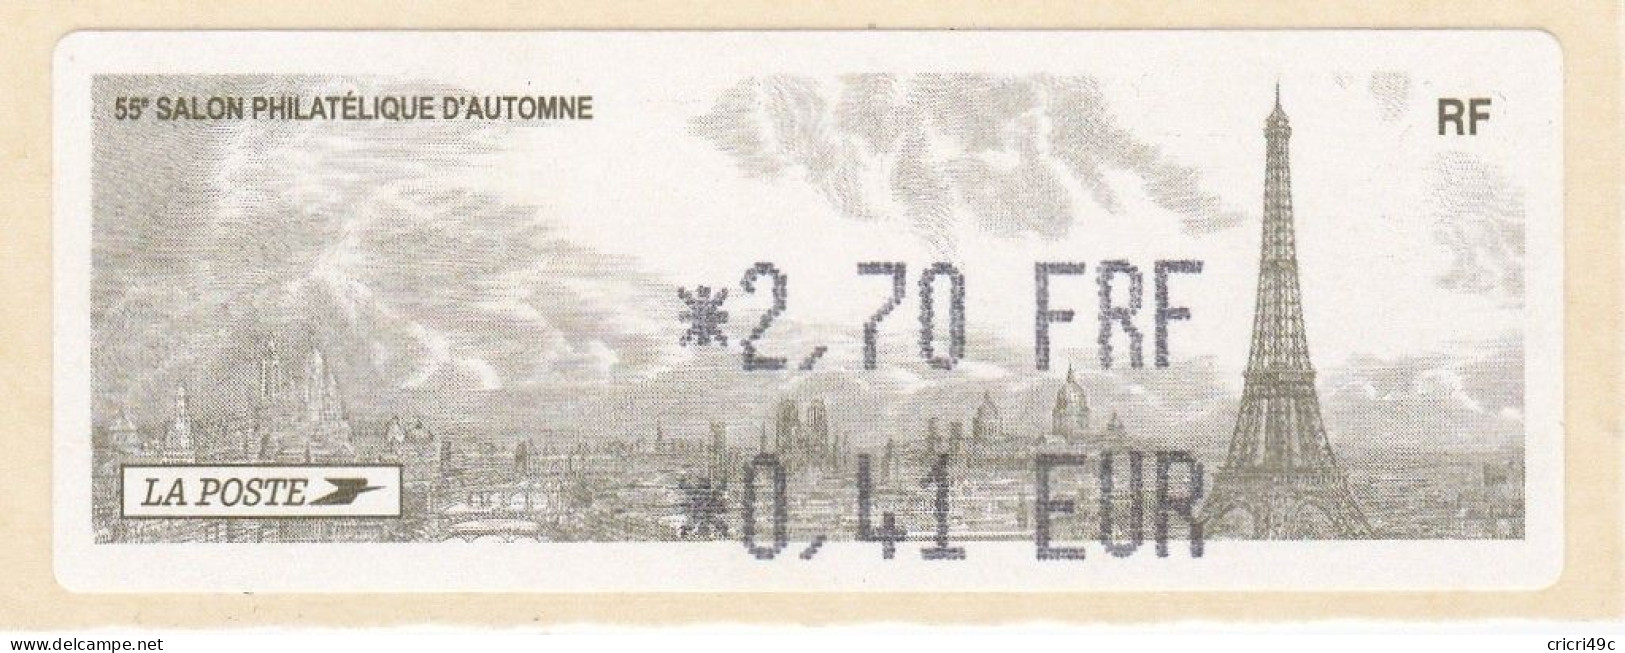 1 ATM LISA. 55è SALON PHILATHELIQUE D"AUTOMNE PARIS  2001. 2.70F  Neufs** - 2010-... Viñetas De Franqueo Illustradas